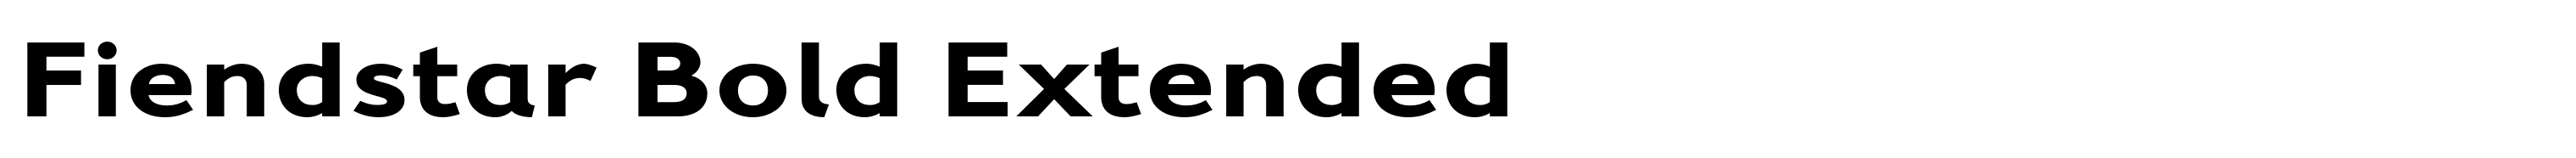 Fiendstar Bold Extended